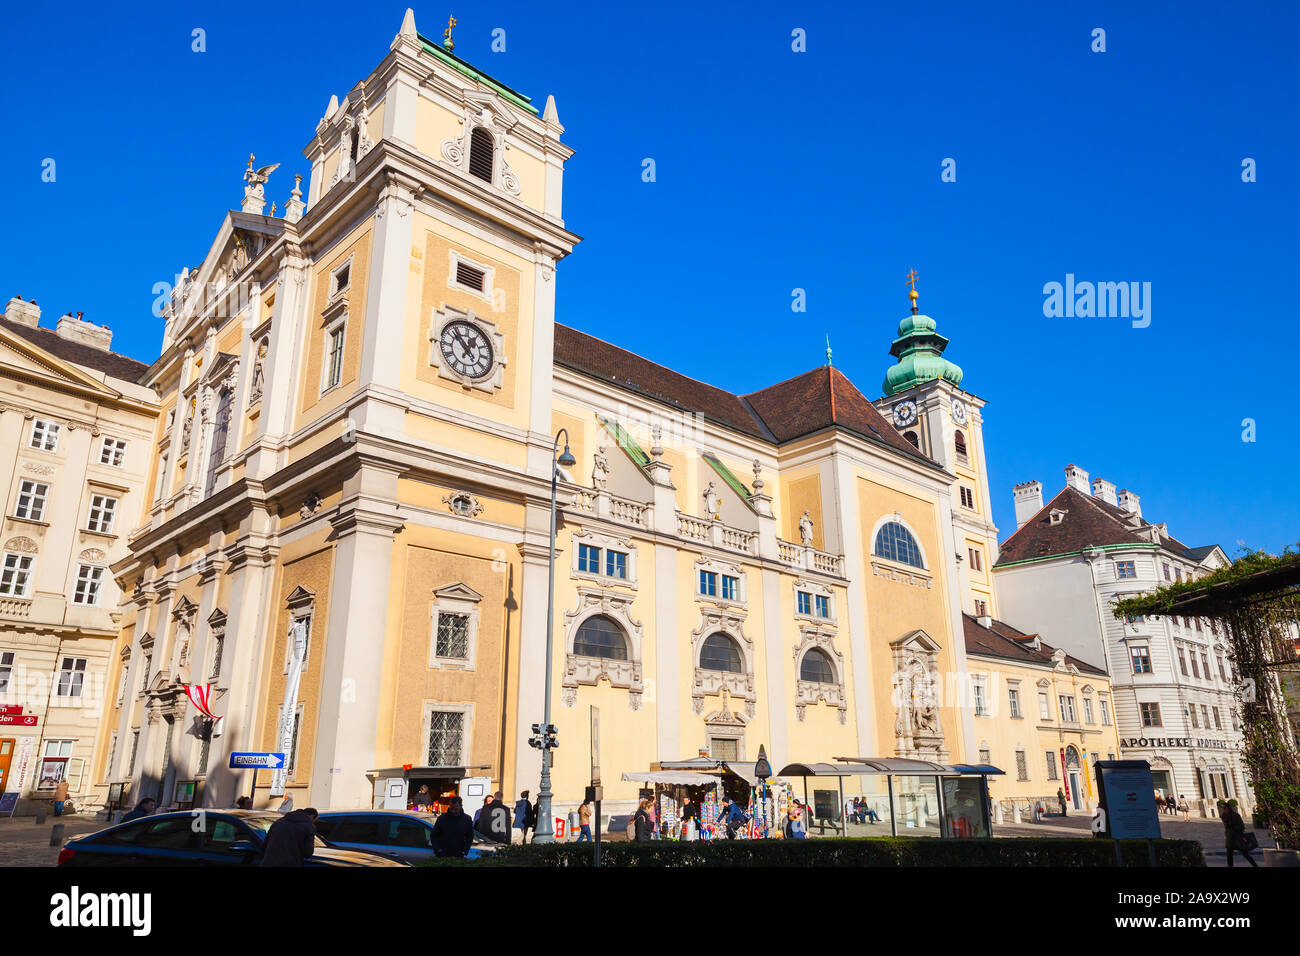 Viena, Austria - Noviembre 4, 2015: el exterior de la Iglesia o los escoceses Schottenkirche en Viena fundada por Hiberno-Escoceses monjes benedictinos en el siglo XII Foto de stock